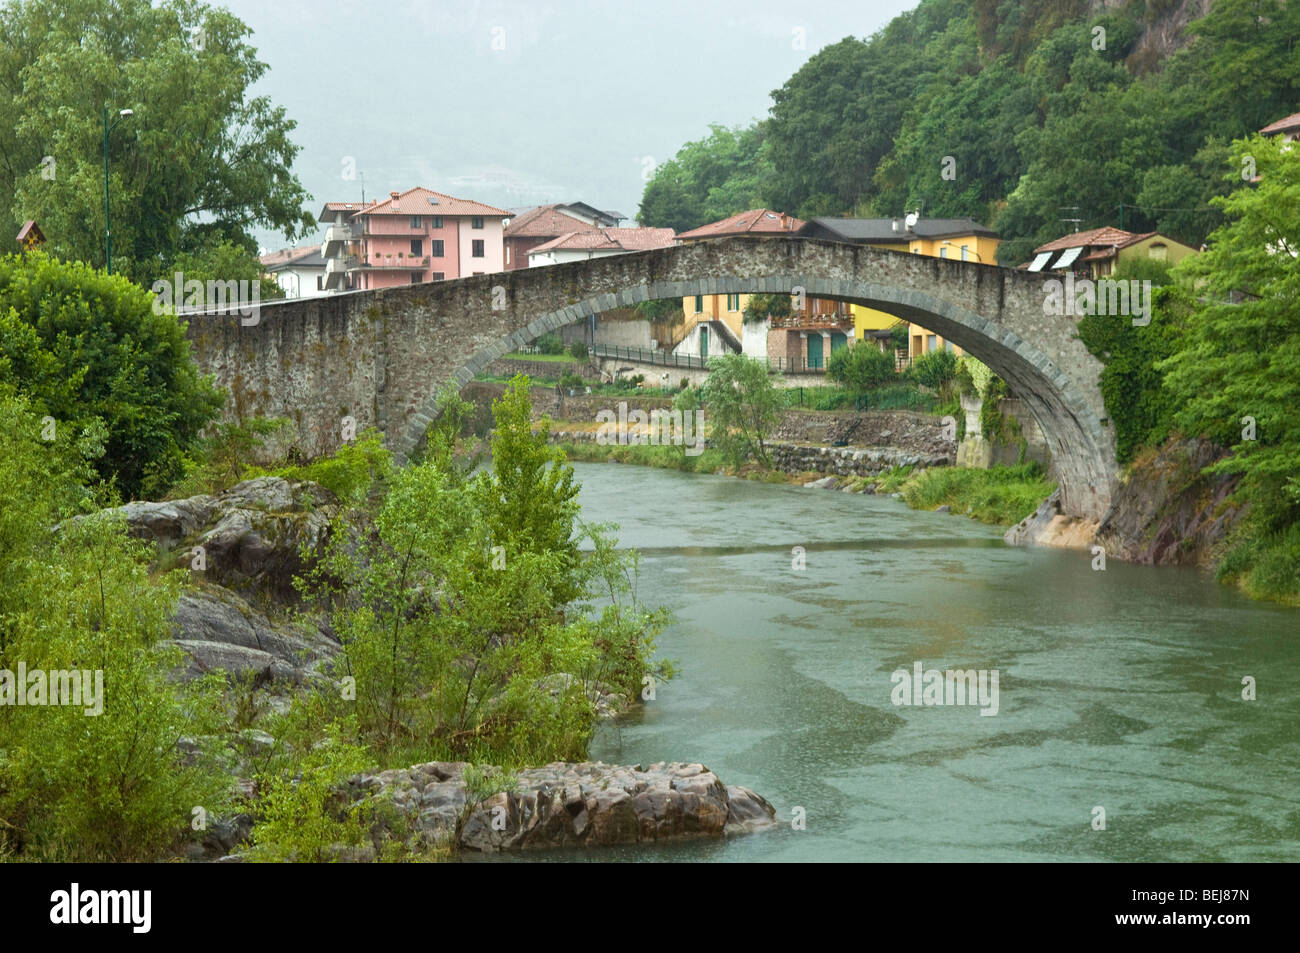 Puente romano sobre el río Boario Terme, Lombardía, Italia Fotografía de stock - Alamy